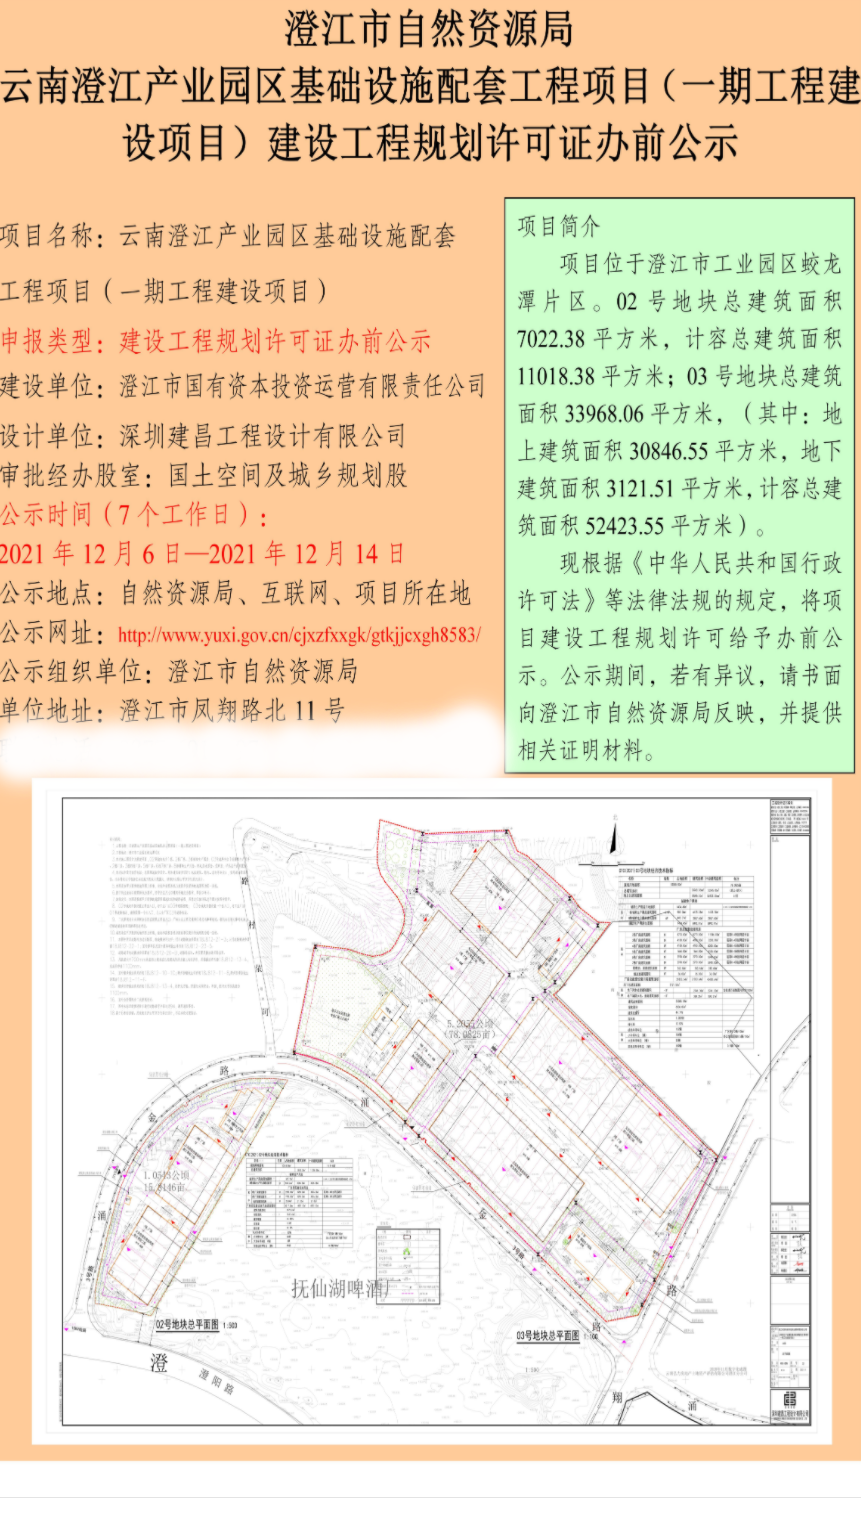 云南澄江产业园区基础设施配套工程项目（一期工程建设项目）建设工程规划许可证办前公示